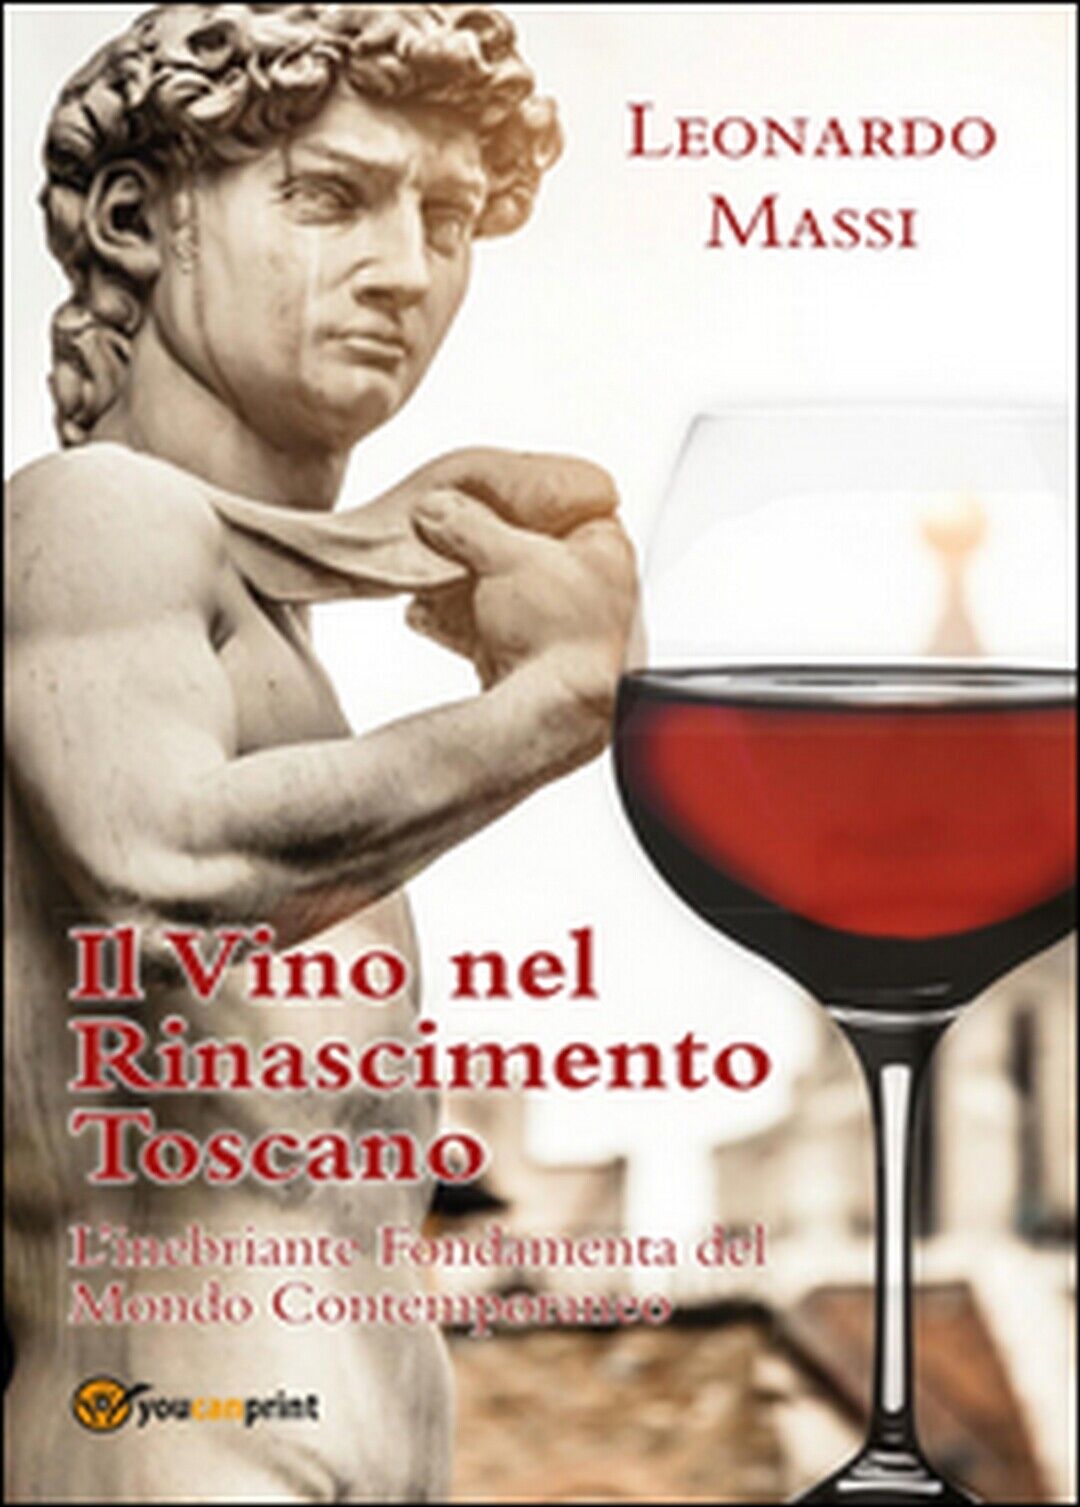 Il vino nel rinascimento toscano  di Leonardo Massi,  2015,  Youcanprint